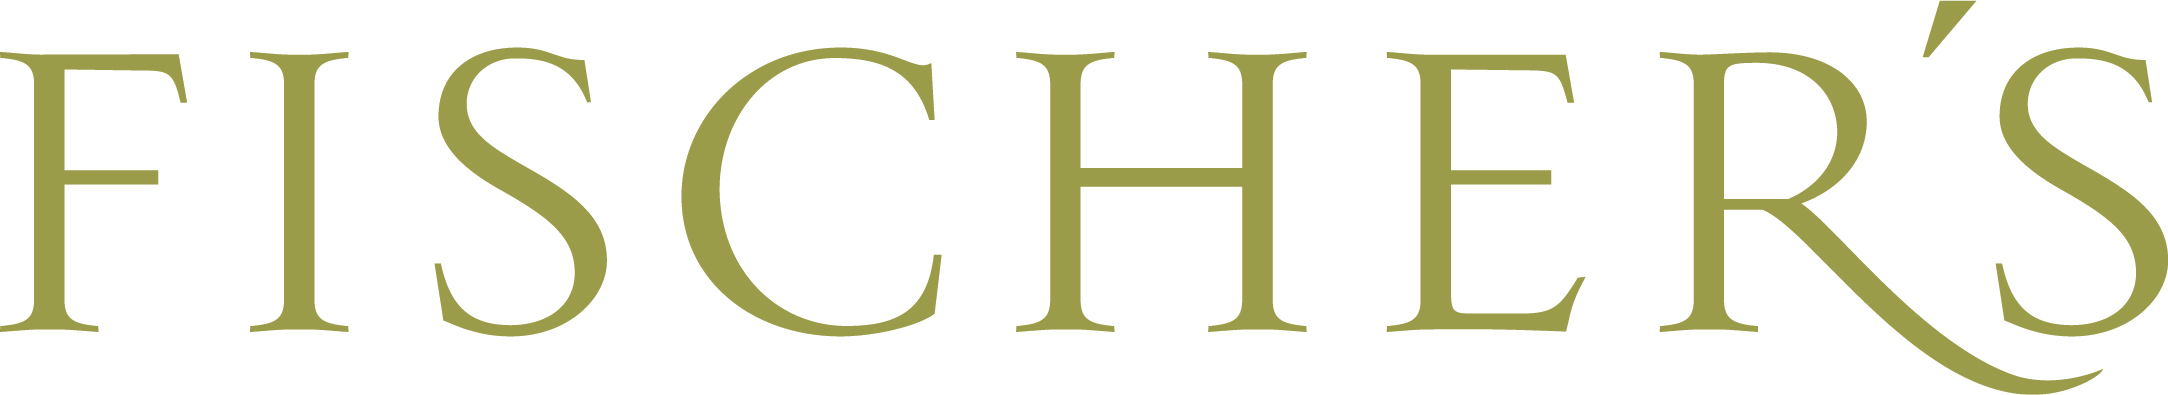 Fischer’s - Logo